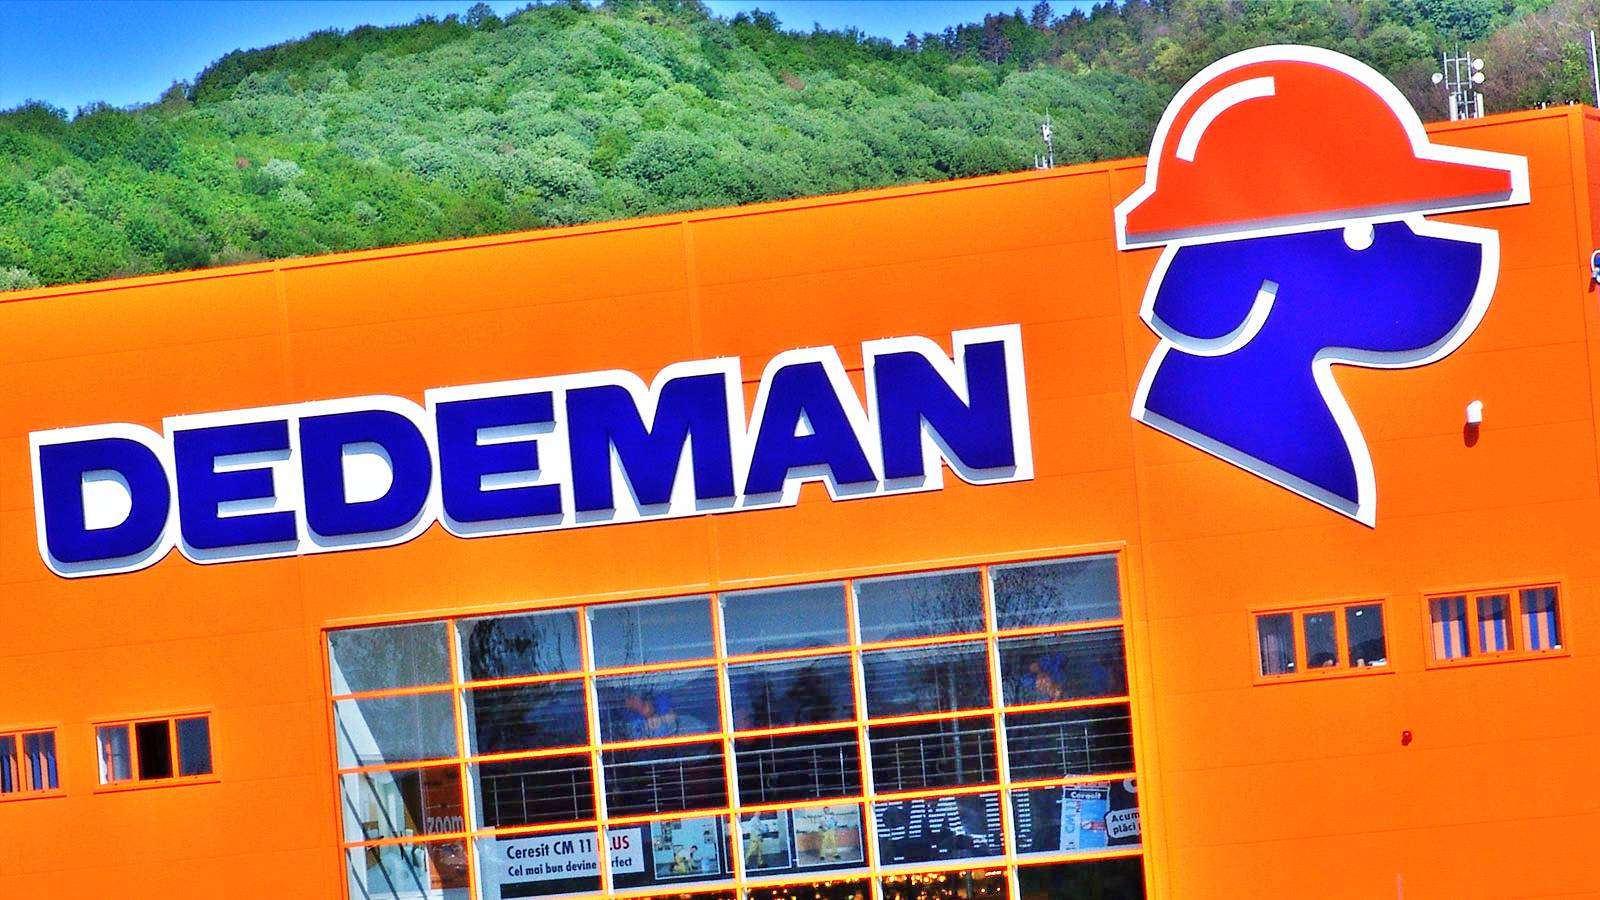 DEDEMAN mide todas las tiendas anunciadas oficialmente a los rumanos